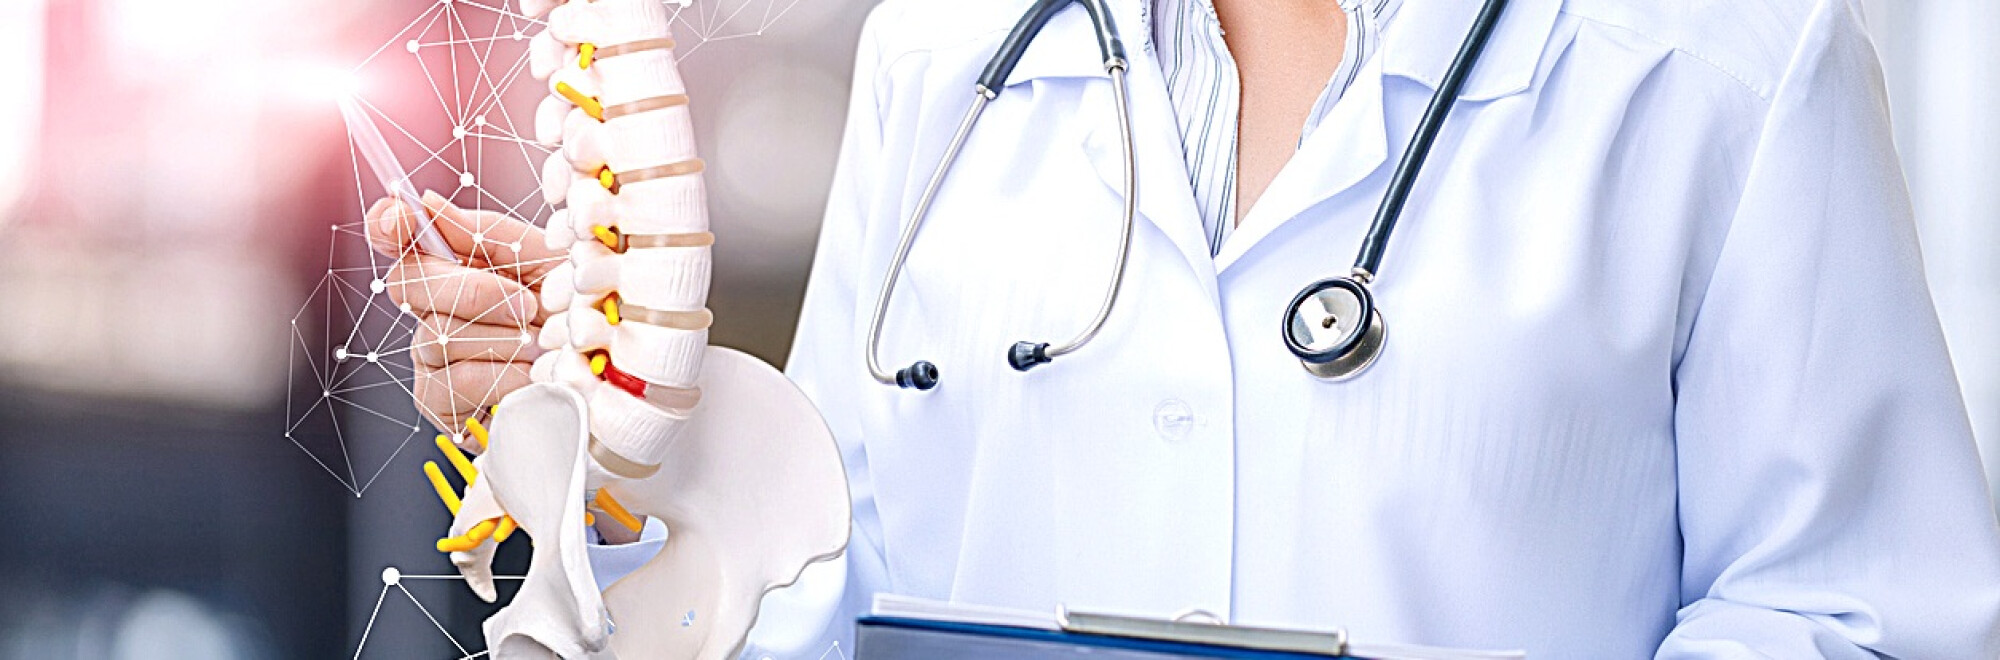 Tratamentul Osteoporozei » LaurusMedical - hemoroizi, varice, dermatologie, gastroenterologie